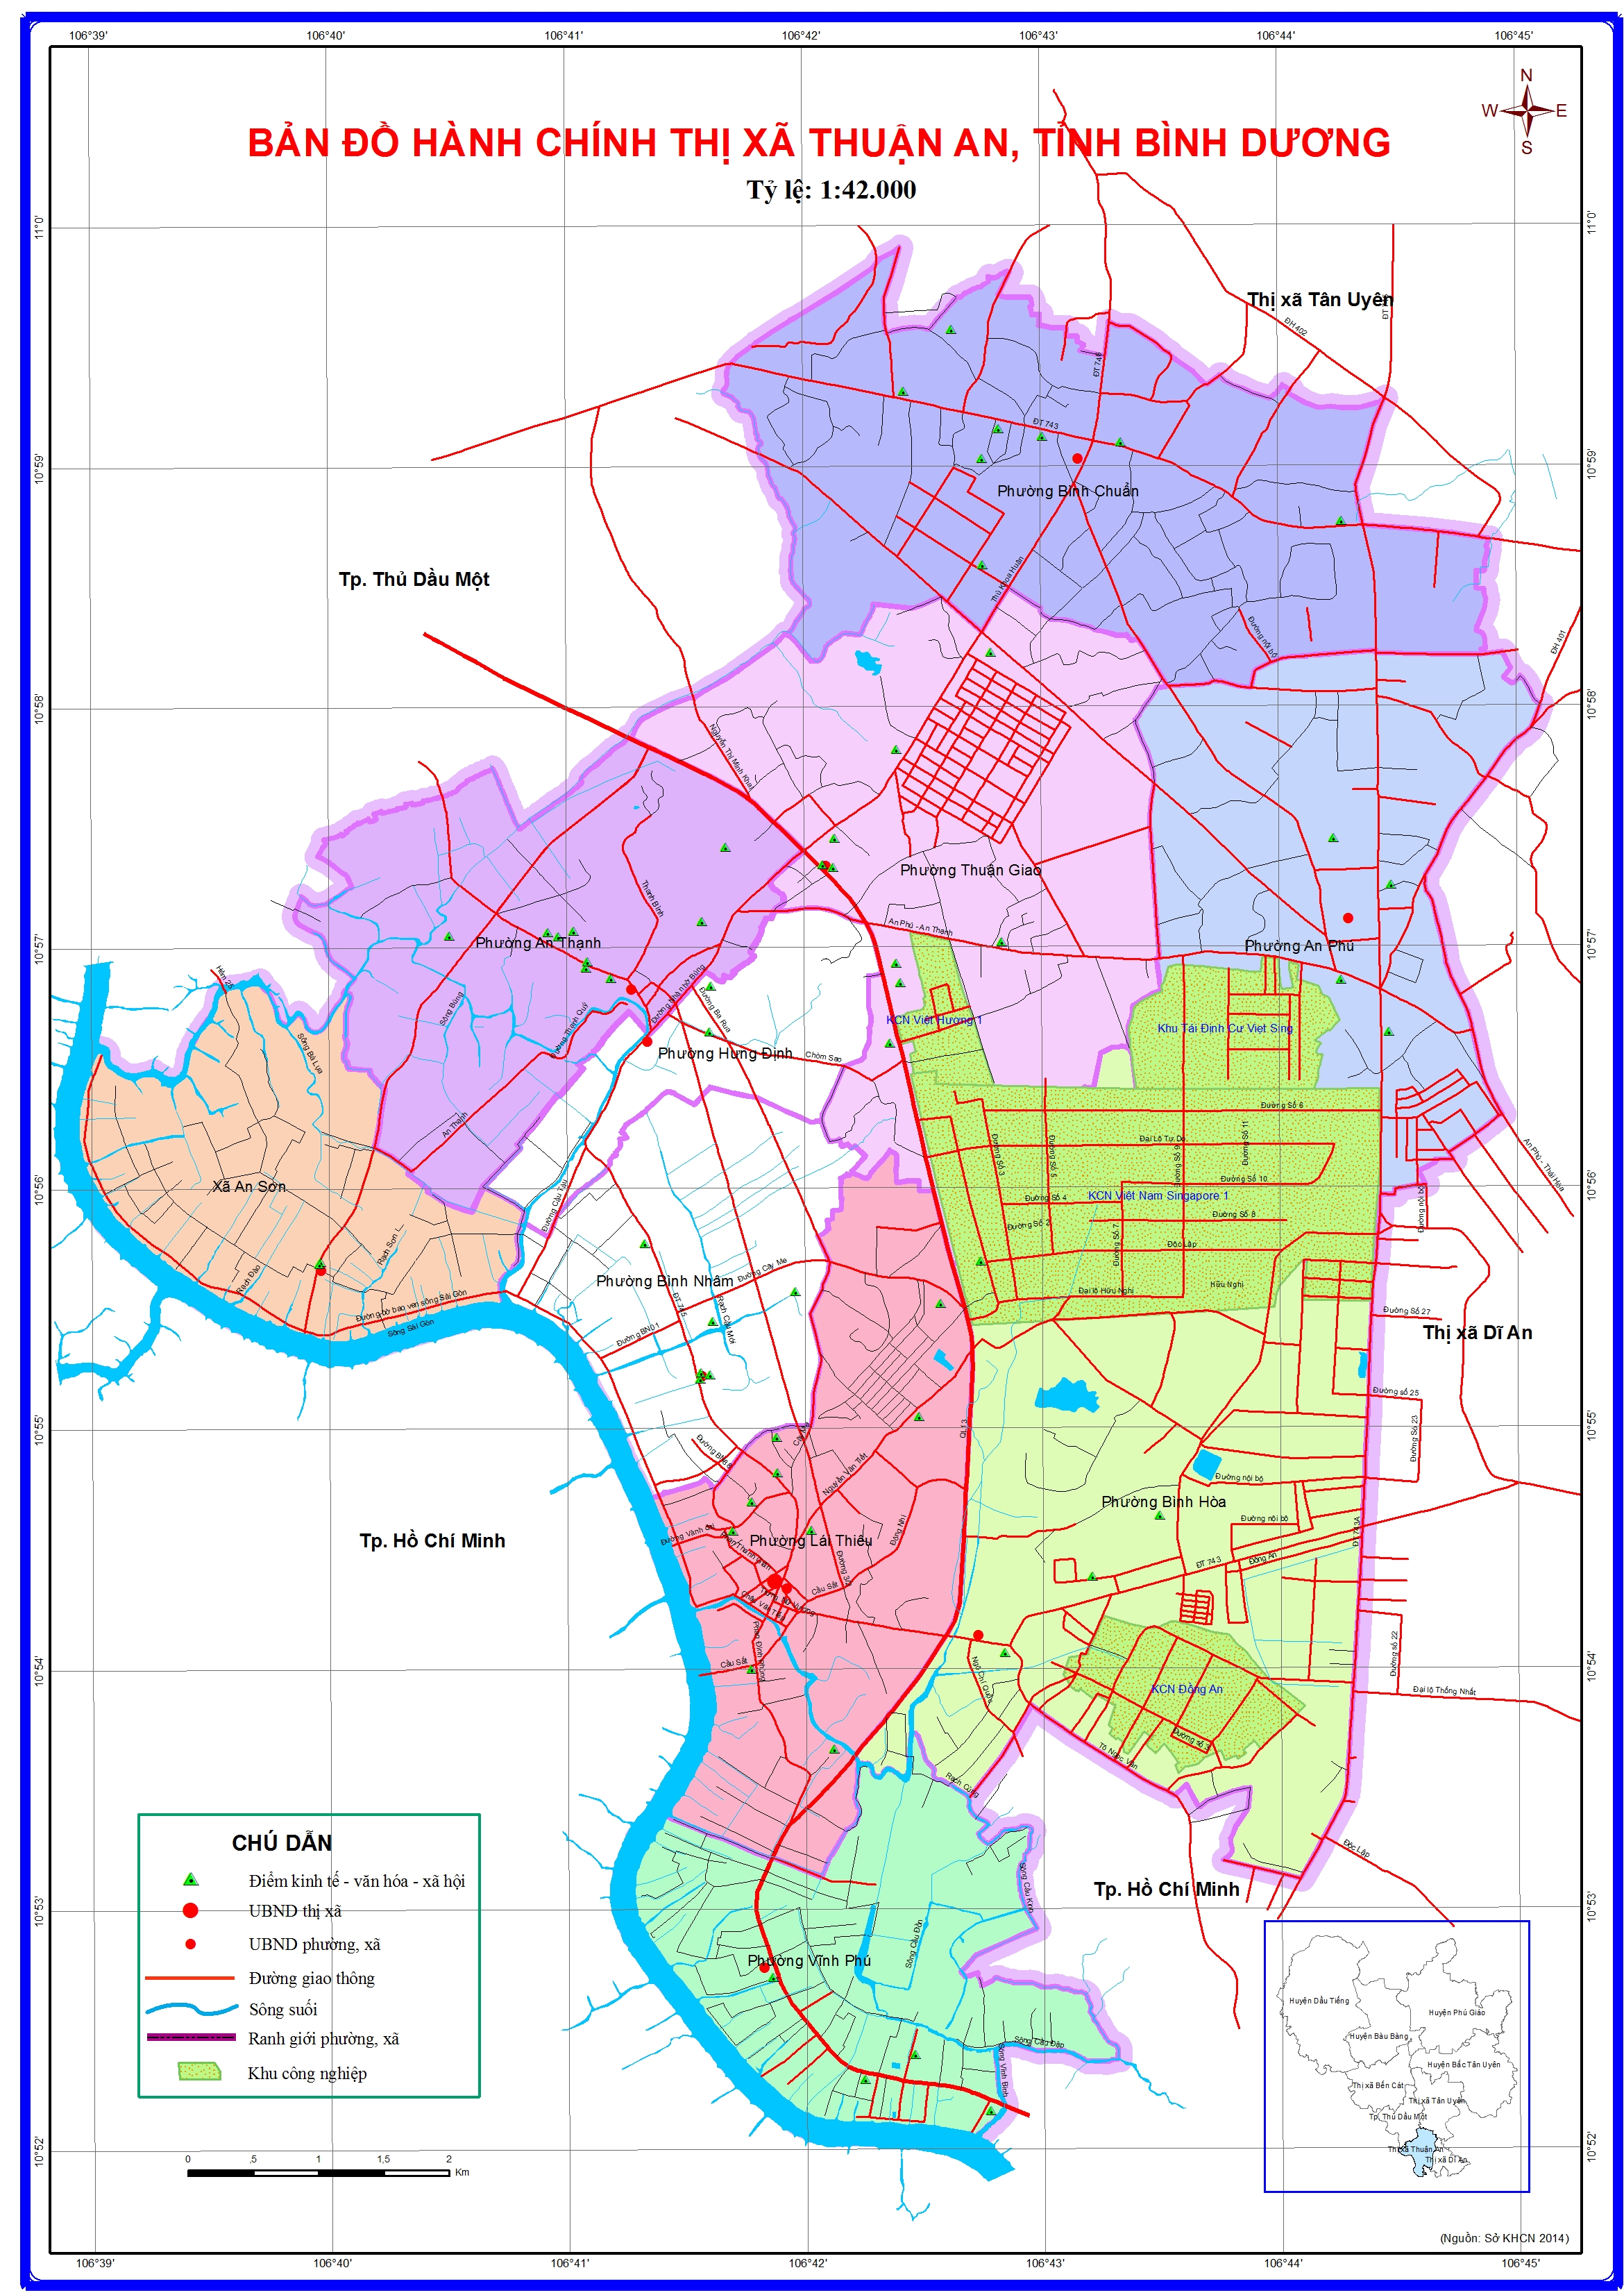 Bản đồ TP Thuận An, tỉnh Bình Dương năm 2024 được cập nhật thường xuyên, đầy đủ với thông tin về các khu vực trong thành phố. Sử dụng bản đồ này, bạn sẽ dễ dàng tiếp cận với các cơ sở hạ tầng và điểm đến tại thành phố này.